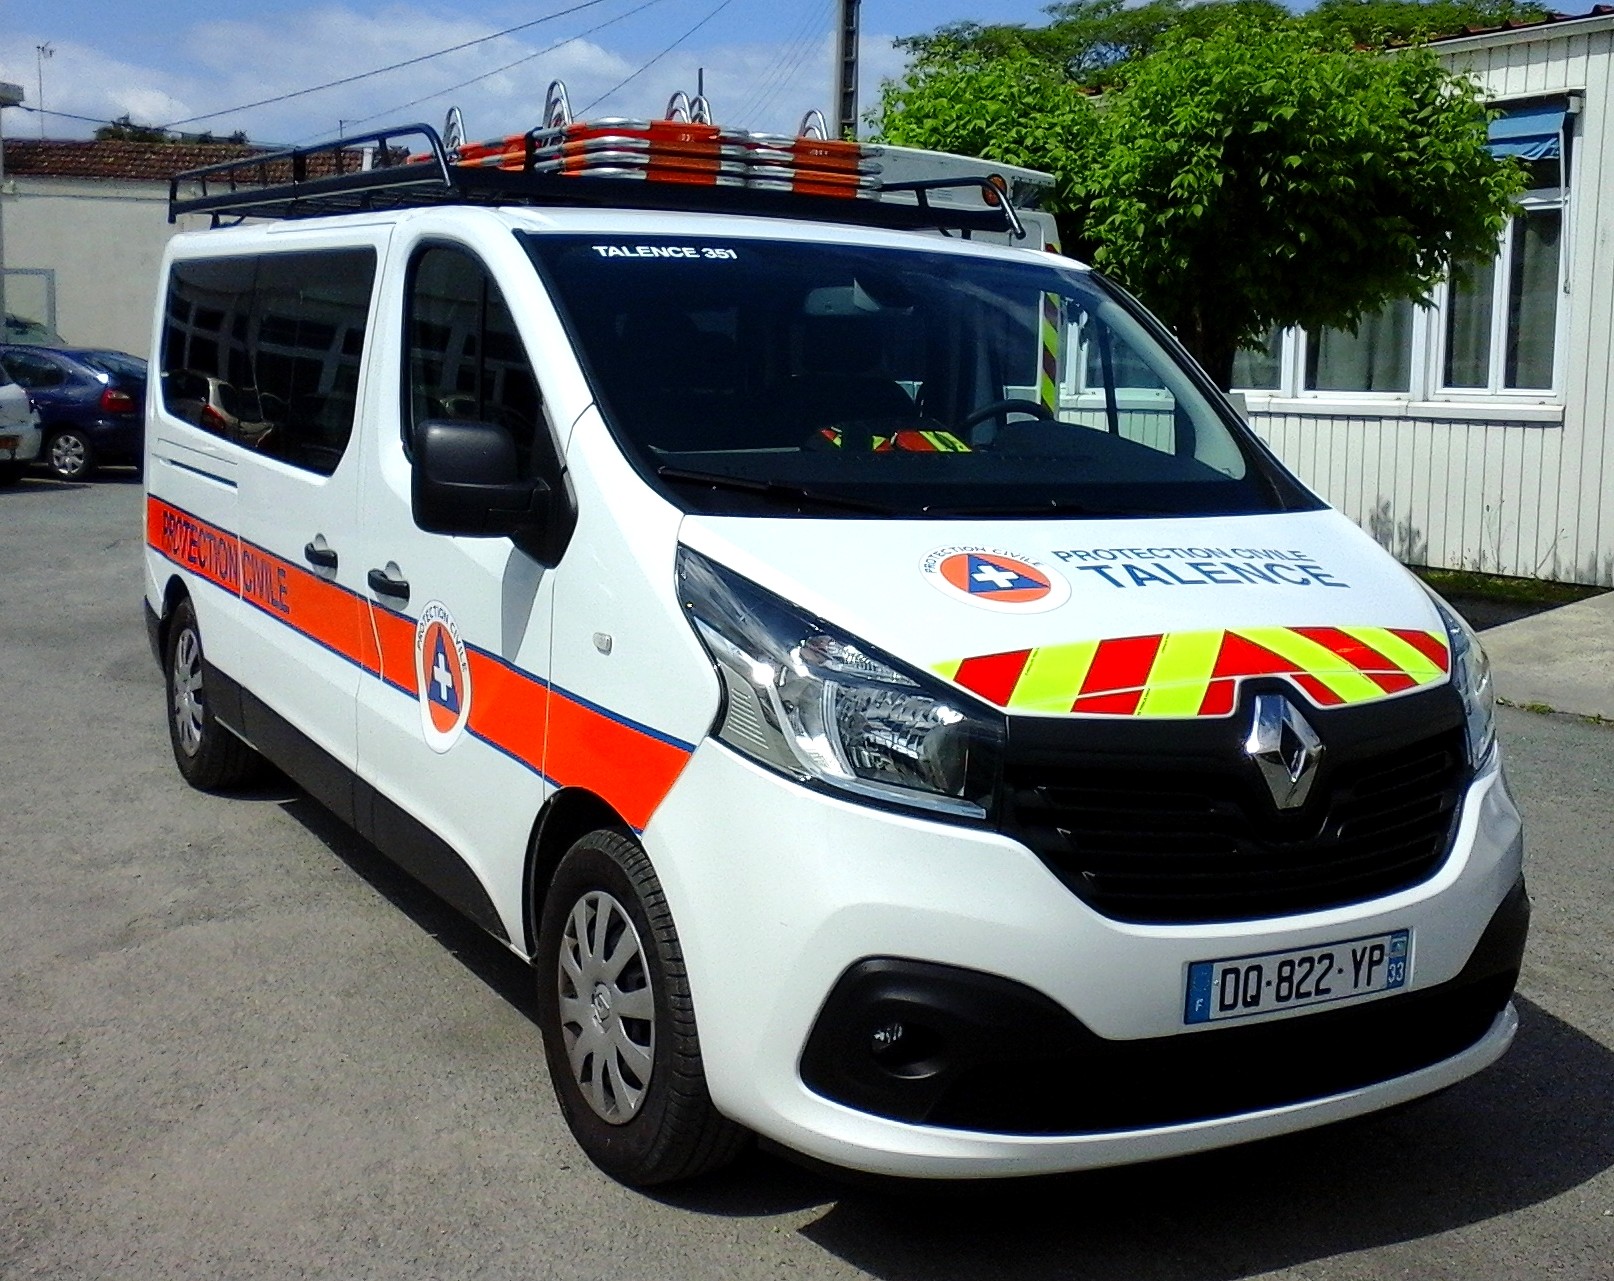 Renault Trafic, Le nouveau véhicule de la Protection Civile